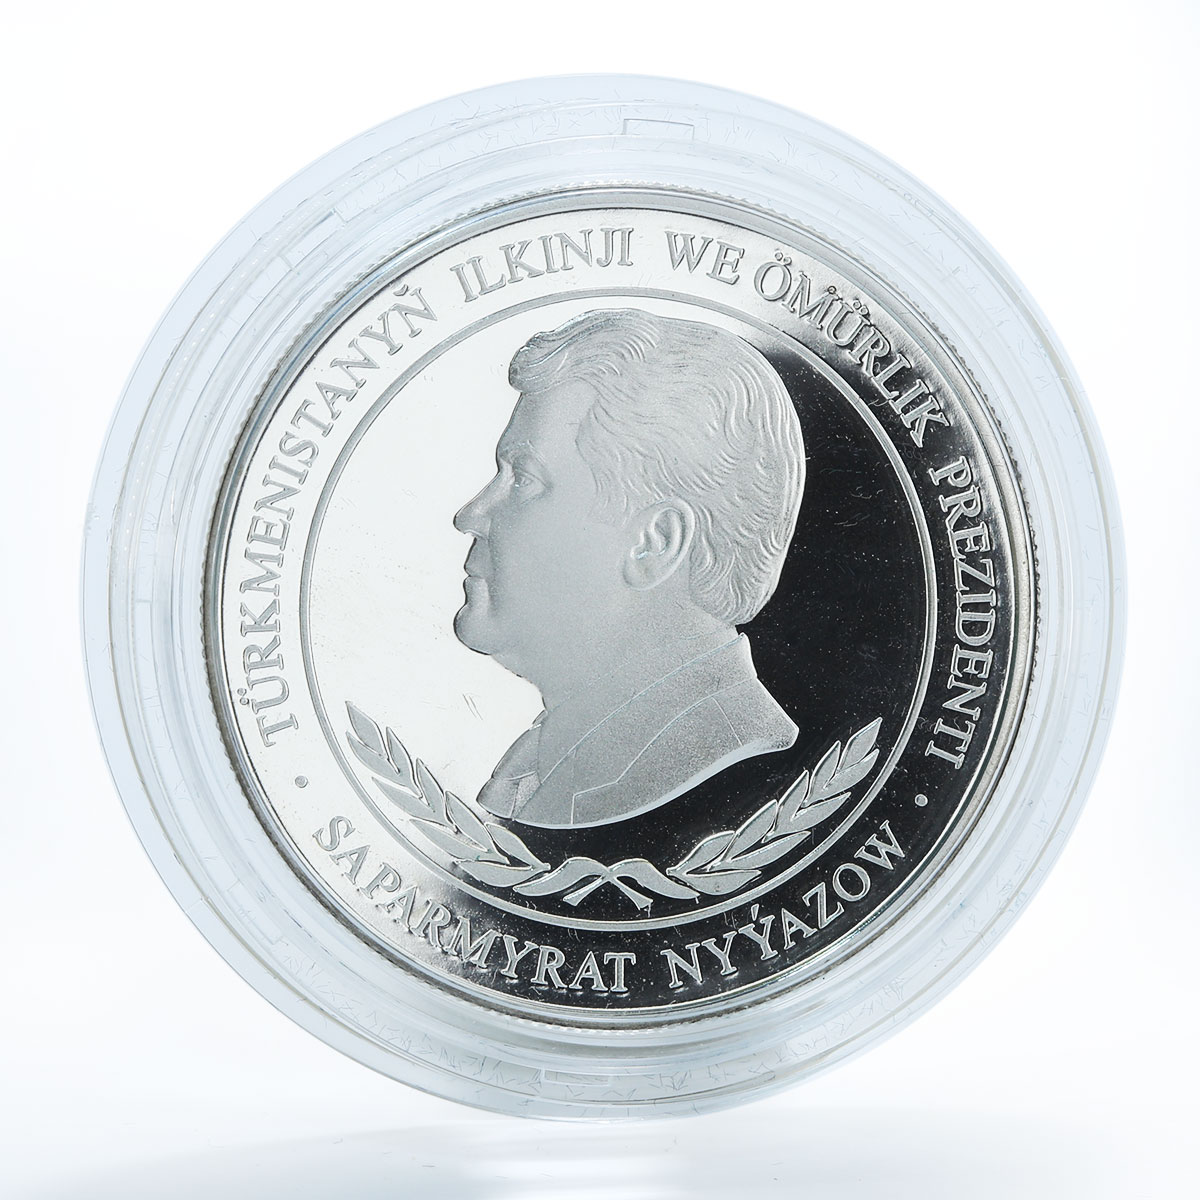 Turkmenistan 500 manat, Mohammad Bairam Khan Turkmen, silver coin, 2001